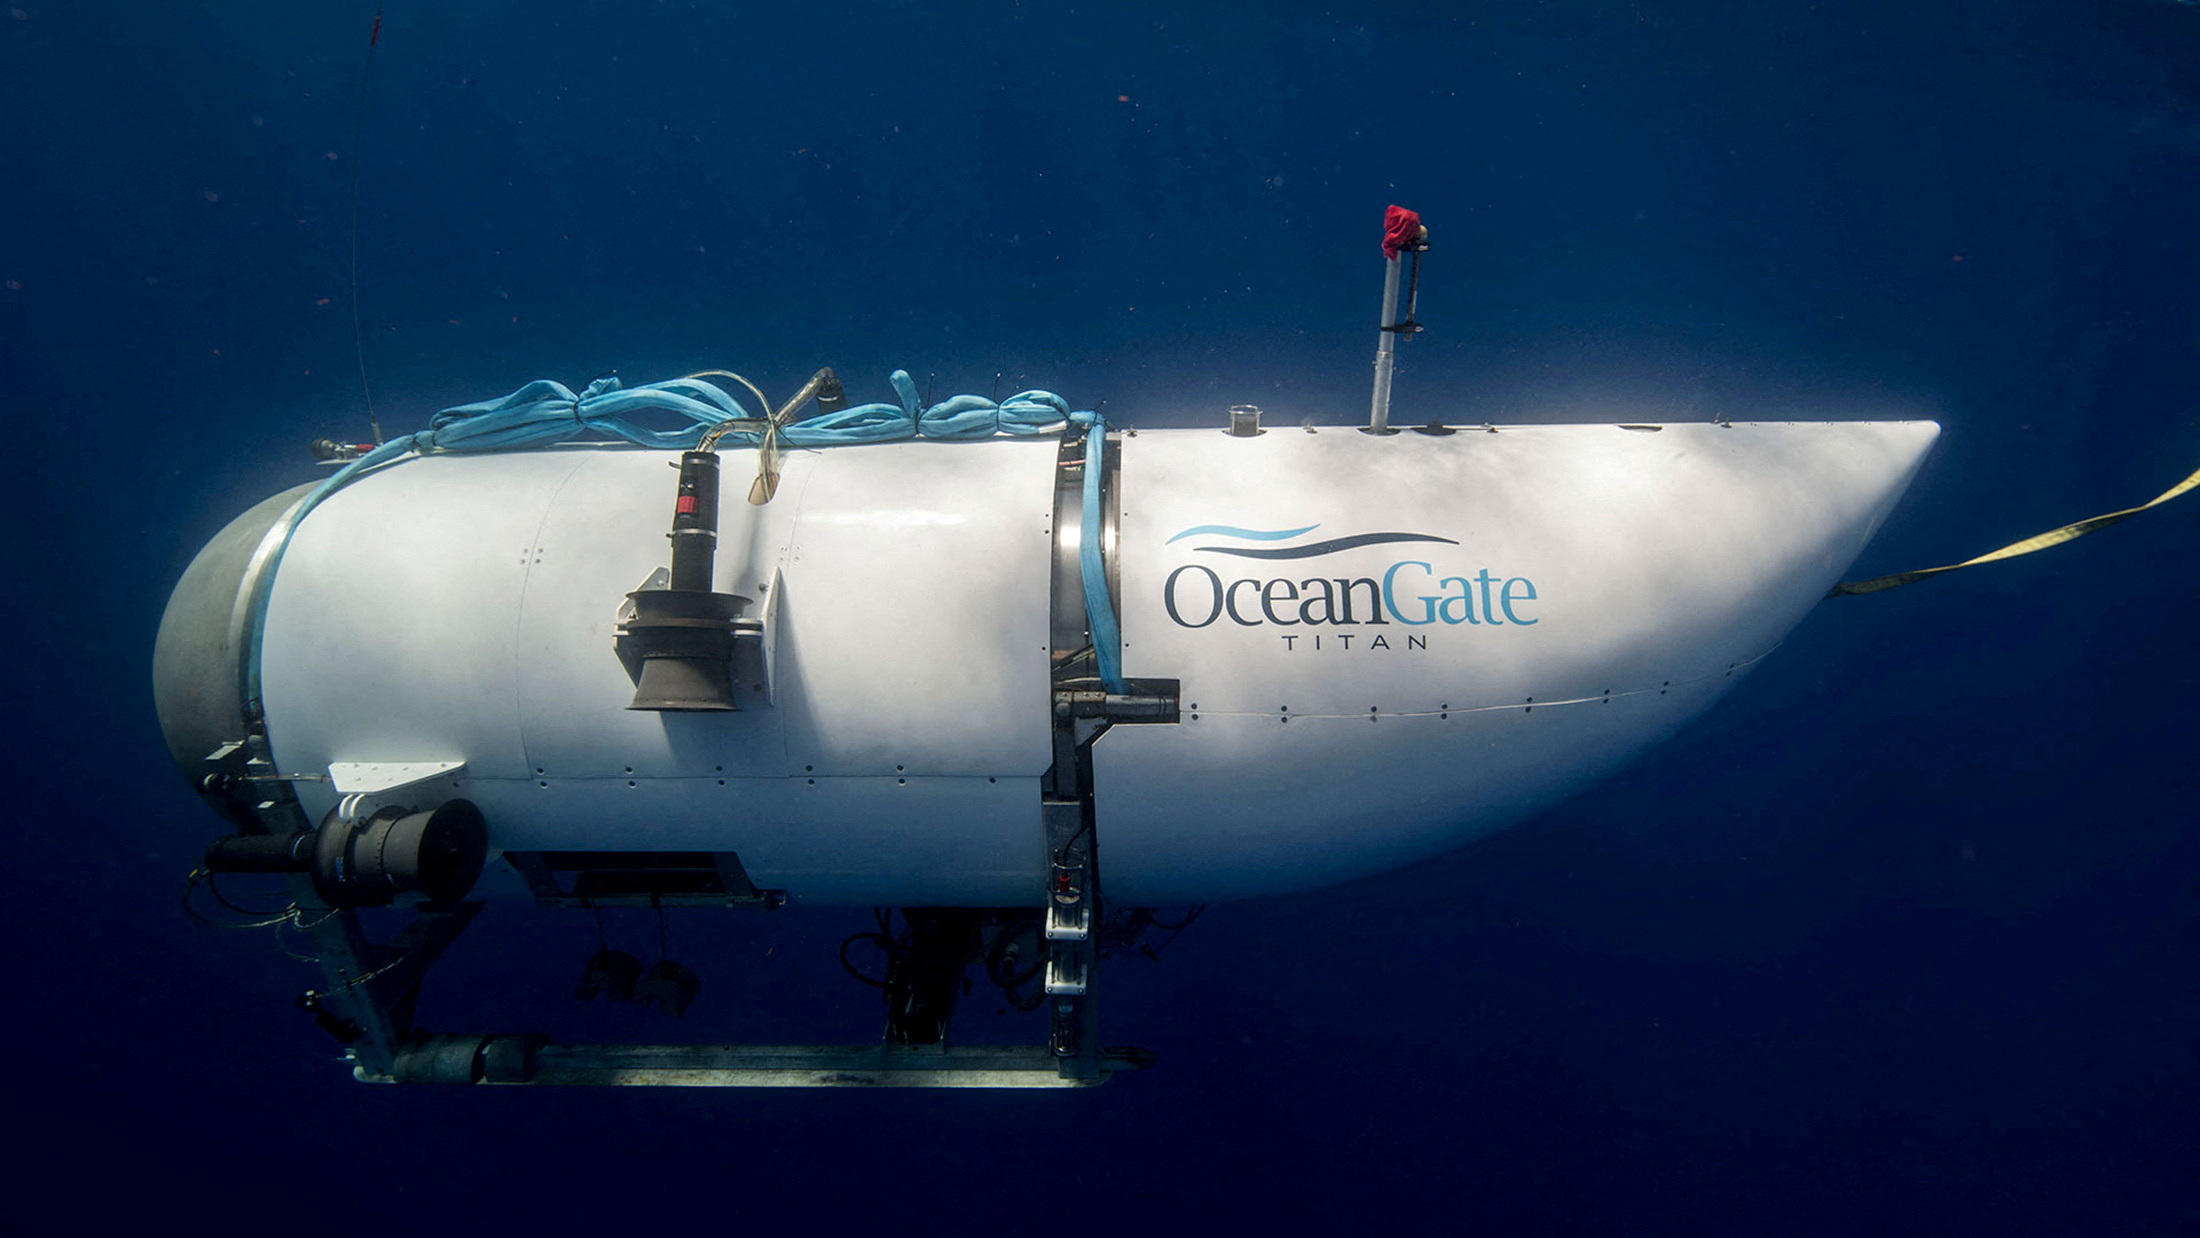 L'appareil d'OceanGate n'avait obtenu aucune certification. Reuters/OceanGate Expeditions/Handout